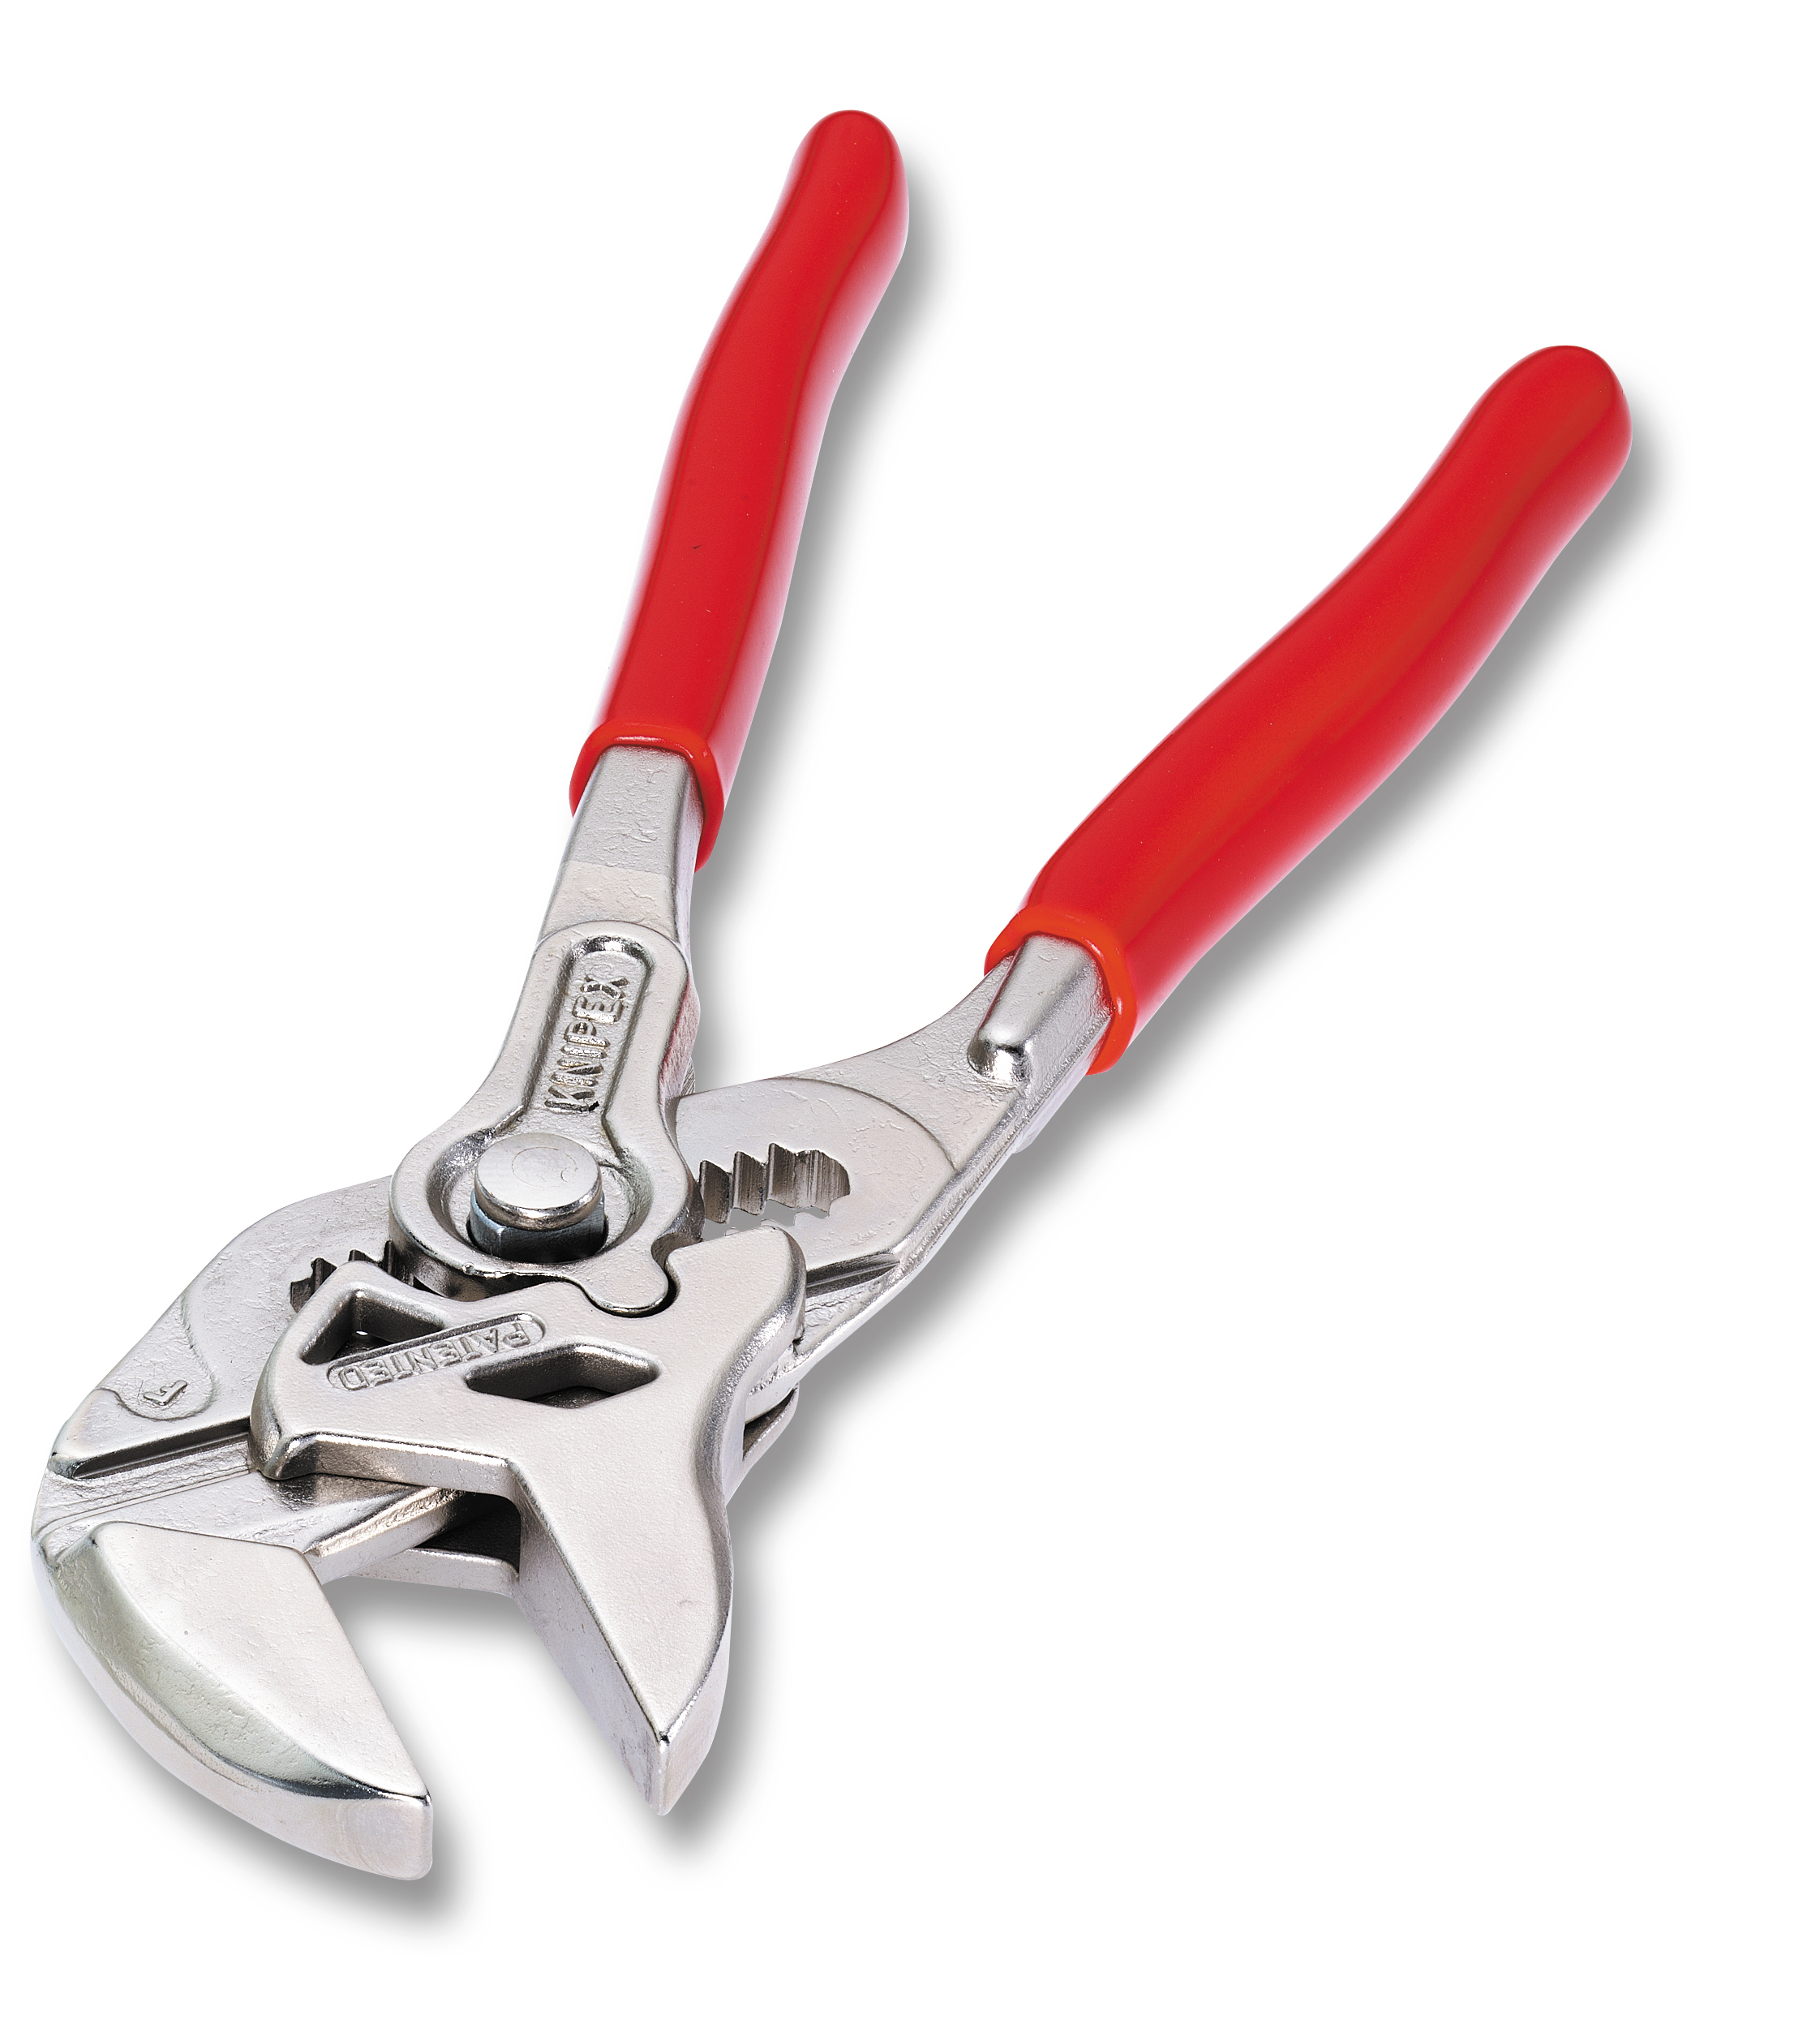 Knipex Polygripzange groß - Zange und Schraubenschlüssel in einem Werkzeug